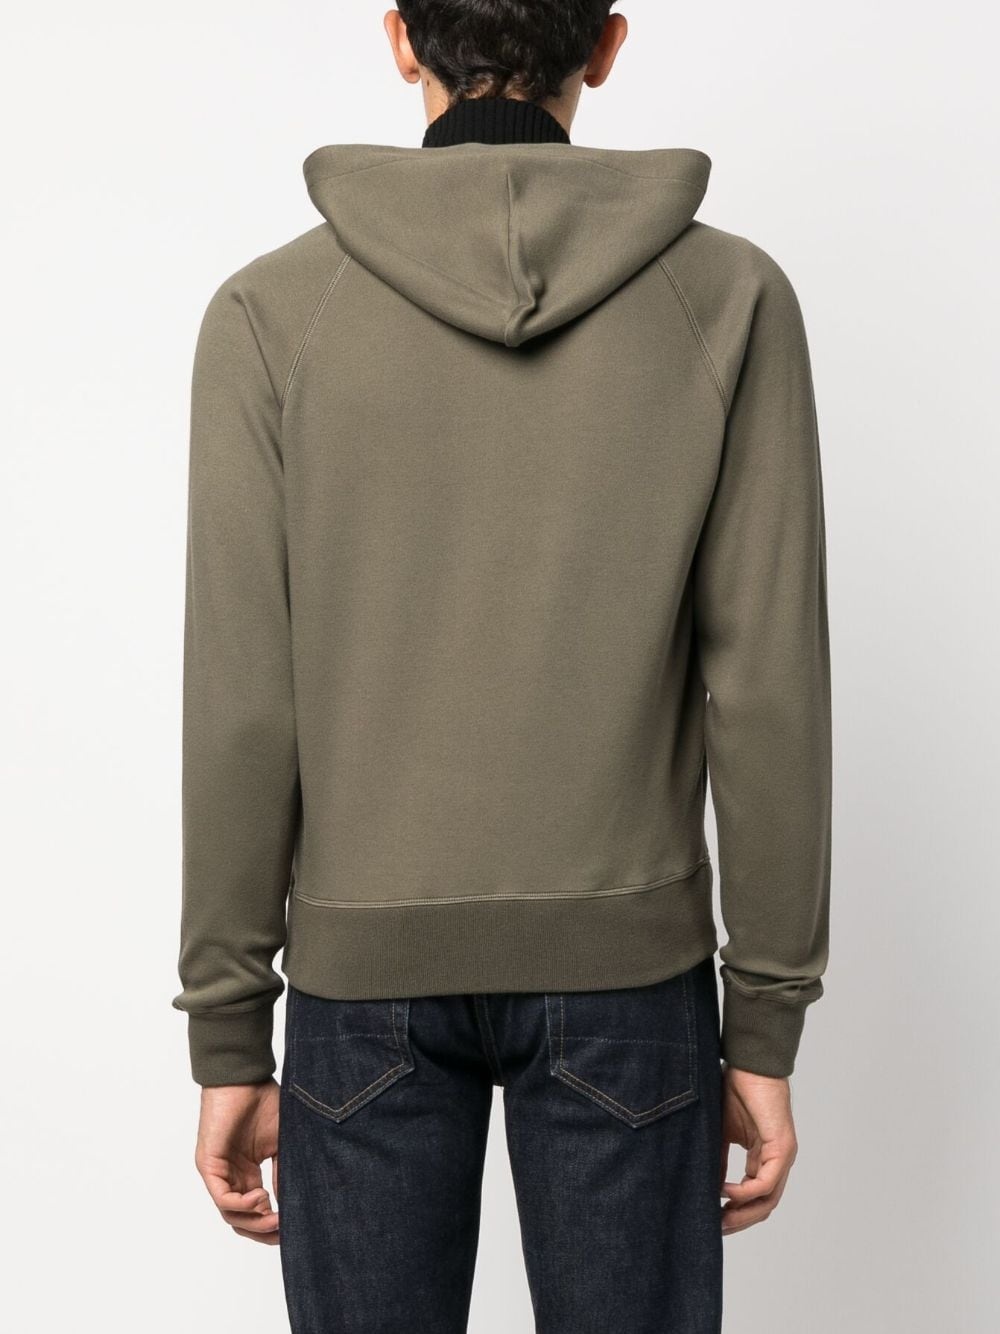 raglan sleeves zipped cotton hoodie - 4